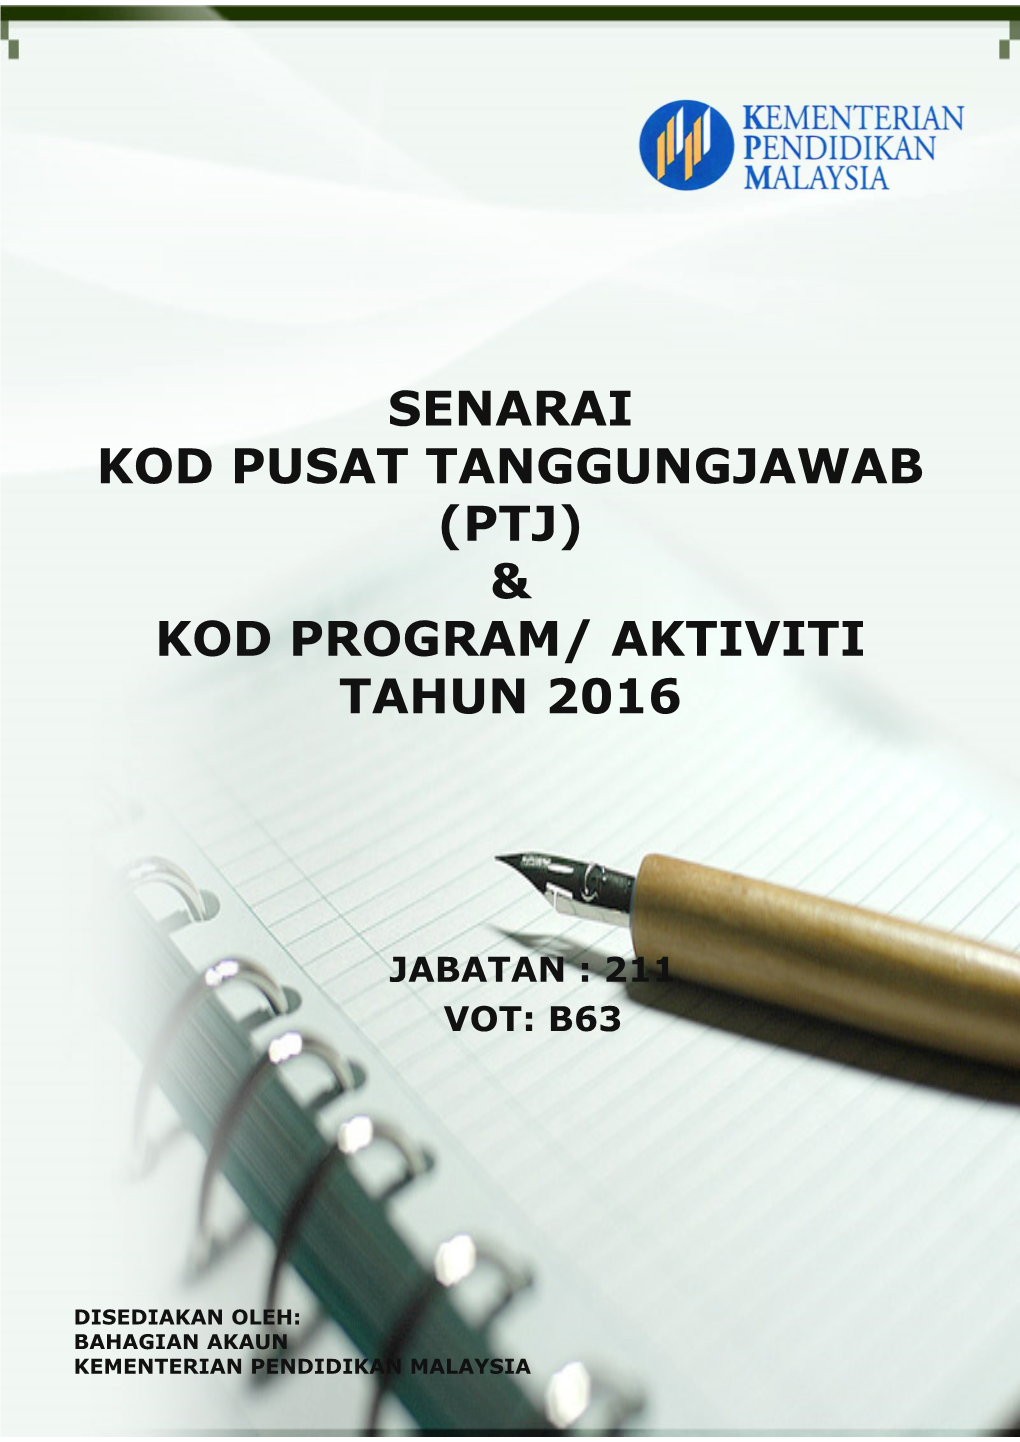 Senarai Kod Pusat Tanggungjawab (Ptj) & Kod Program/ Aktiviti Tahun 2016